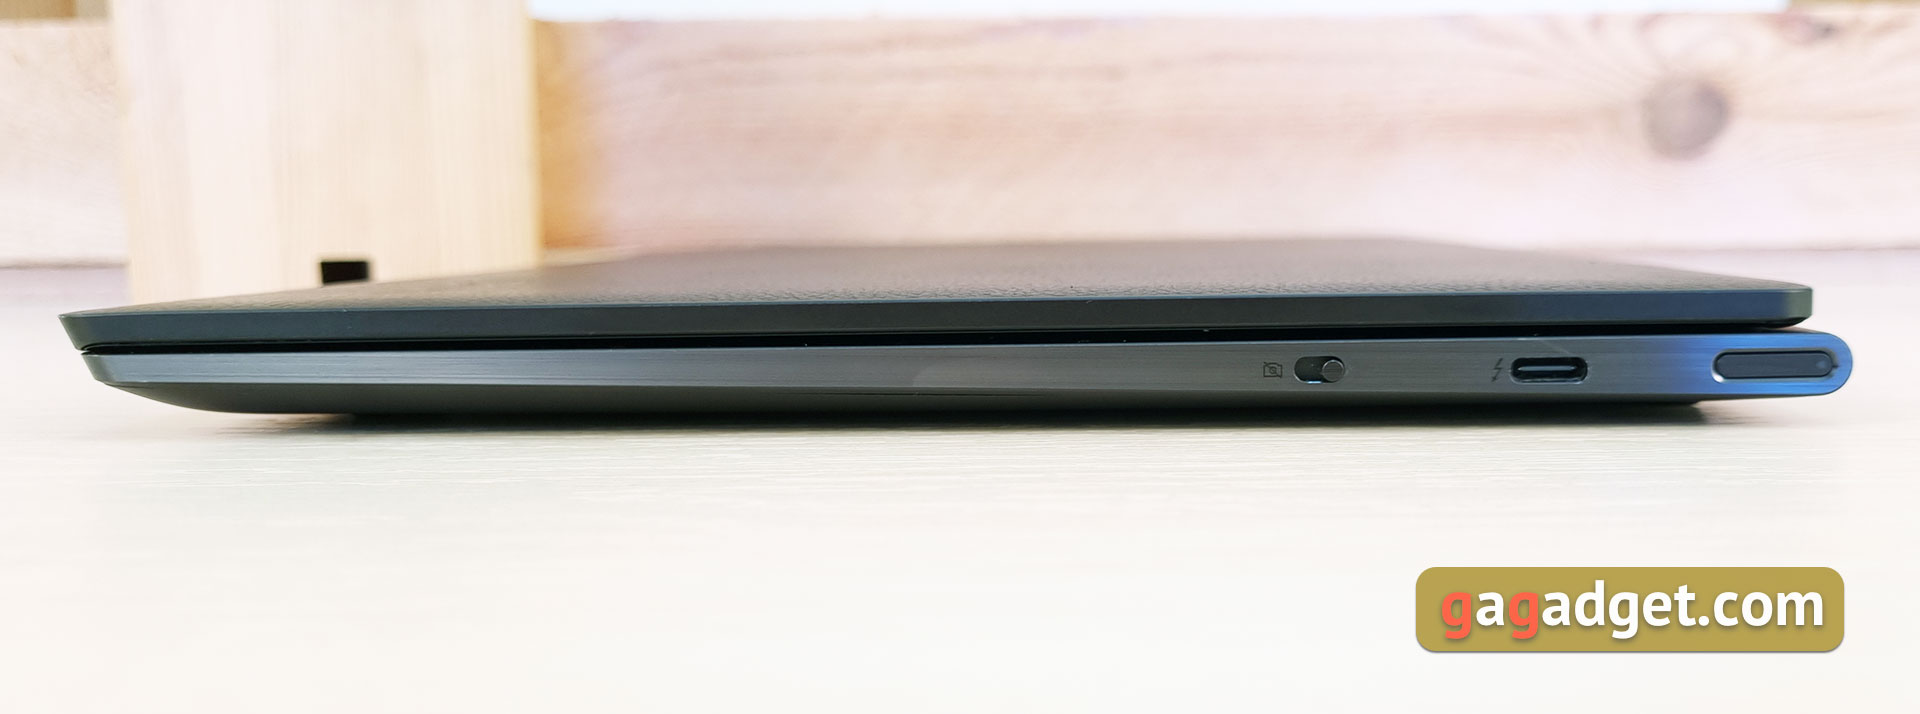 Lenovo Yoga Slim 9i Laptop Test-11